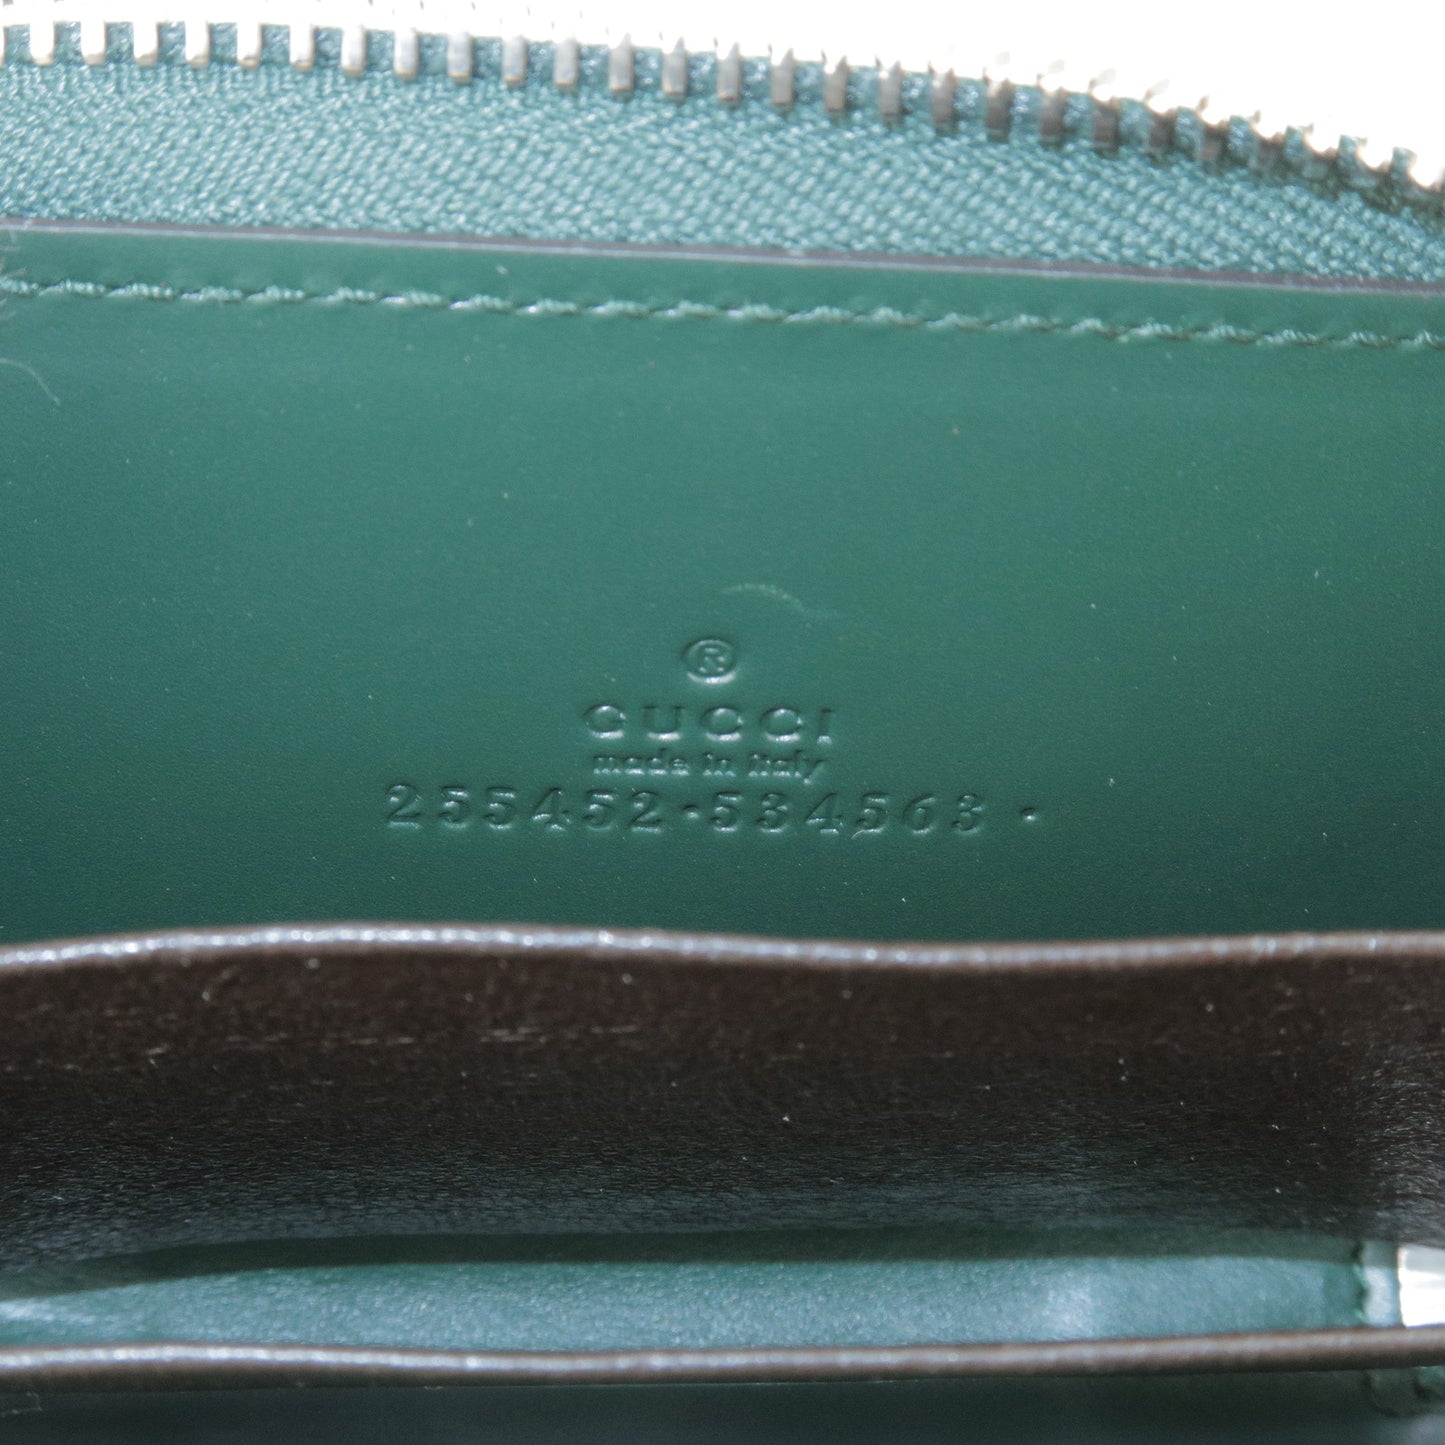 GUCCI Guccissima Leather Round Zipper Coin Case Green 255452